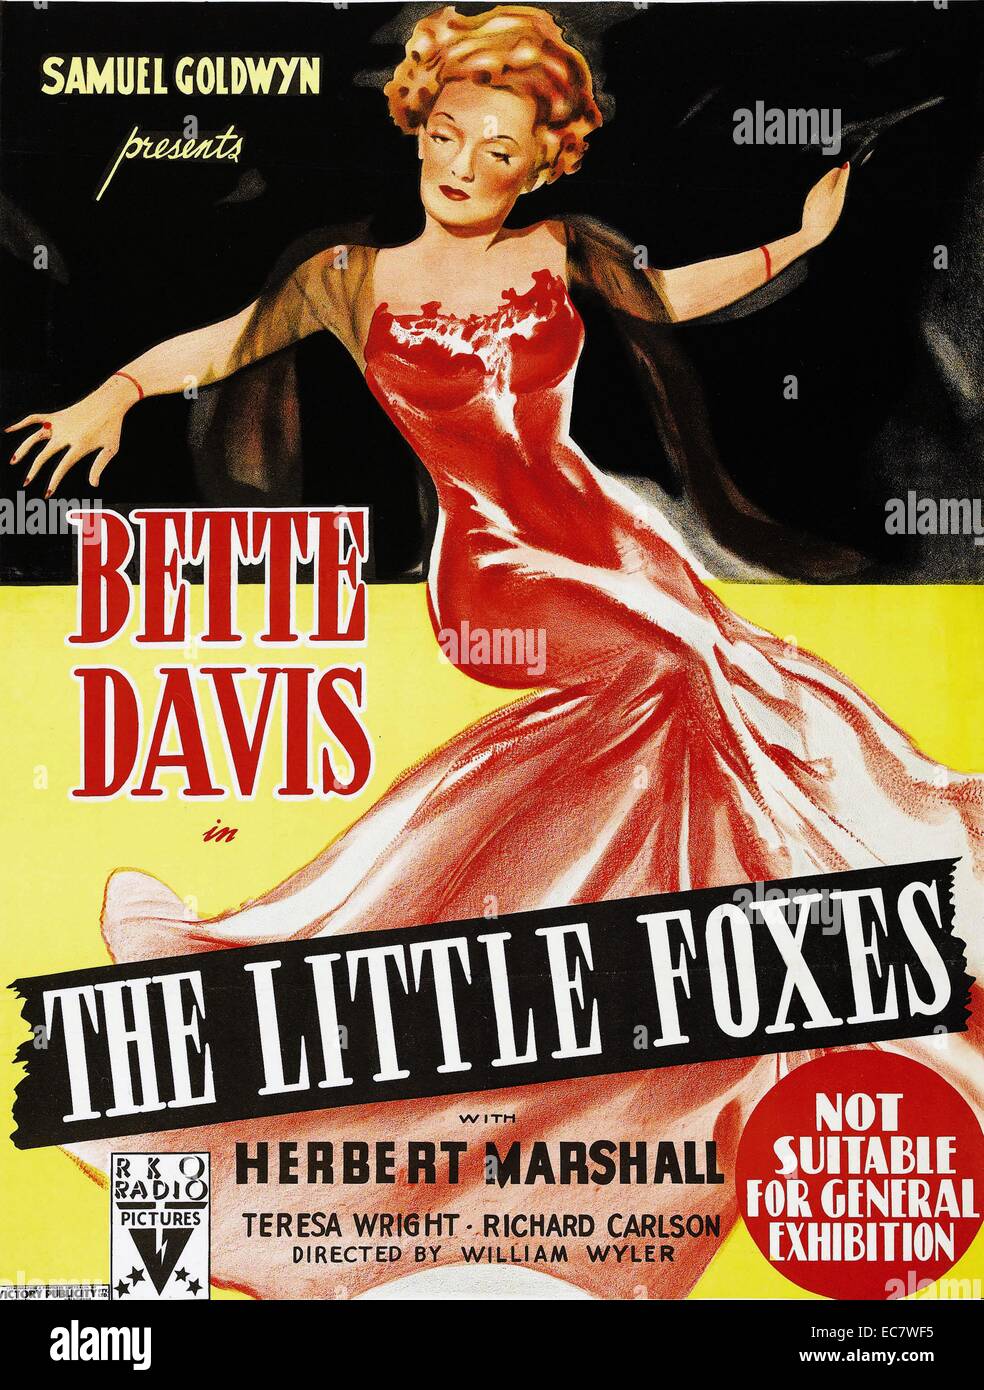 Le Piccole volpi, 1941, è un American Drama film diretto da William Wyler. La sceneggiatura di Lillian Hellman è basata sulla sua 1939 giocare con lo stesso nome. Interpretato da Bette Davis, Herbert Marshall e Teresa Wright. Foto Stock